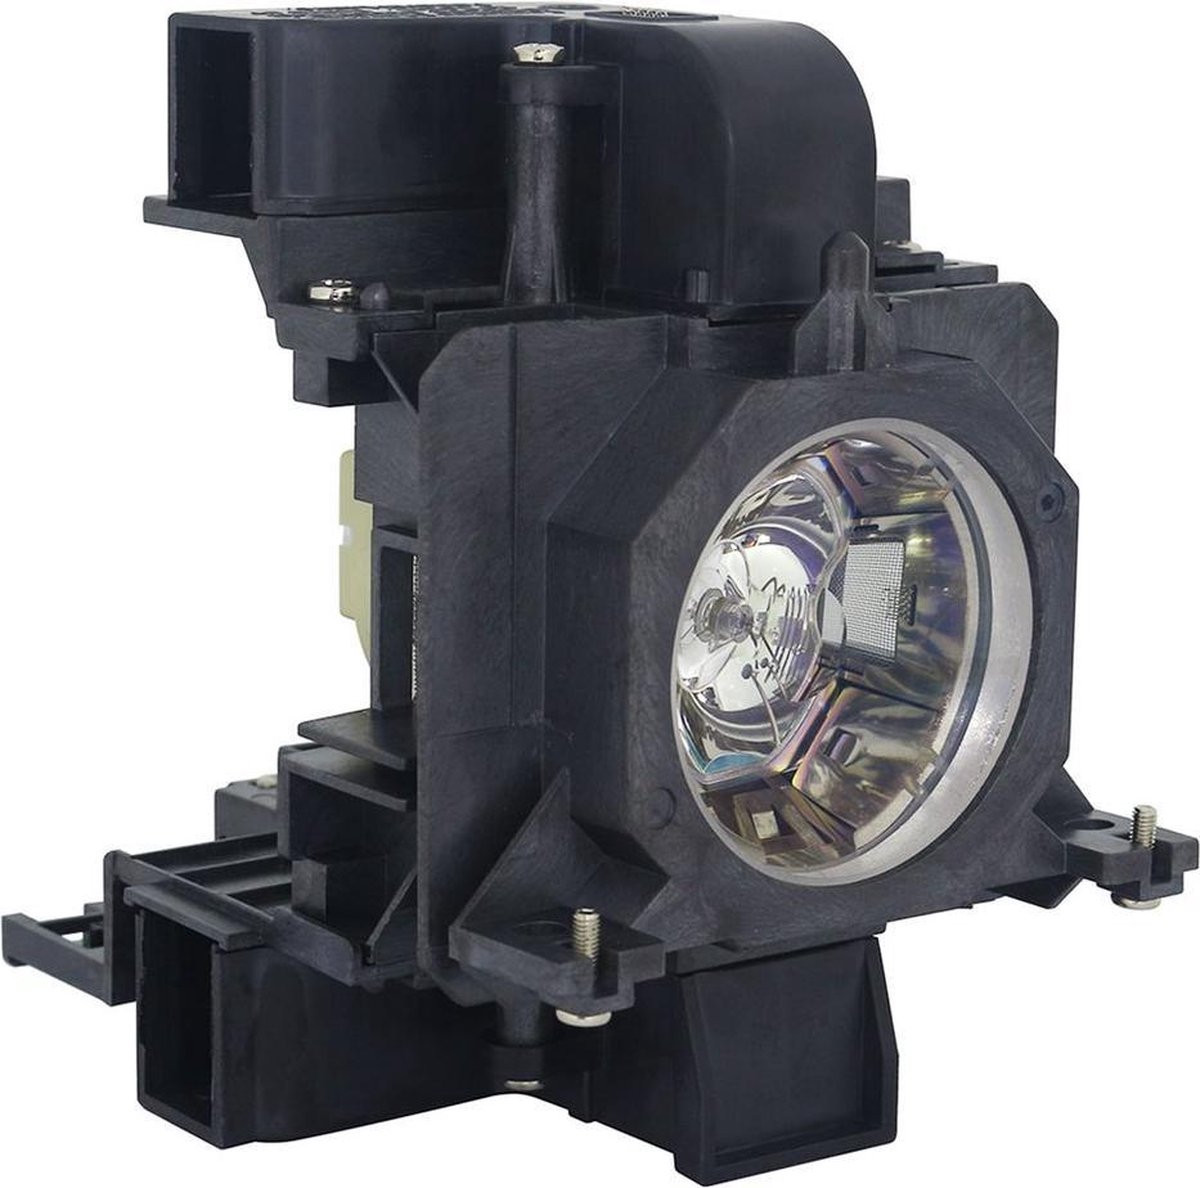 Beamerlamp geschikt voor de PANASONIC PT-EW630U beamer, lamp code ET-LAE200. Bevat originele UHP lamp, prestaties gelijk aan origineel.